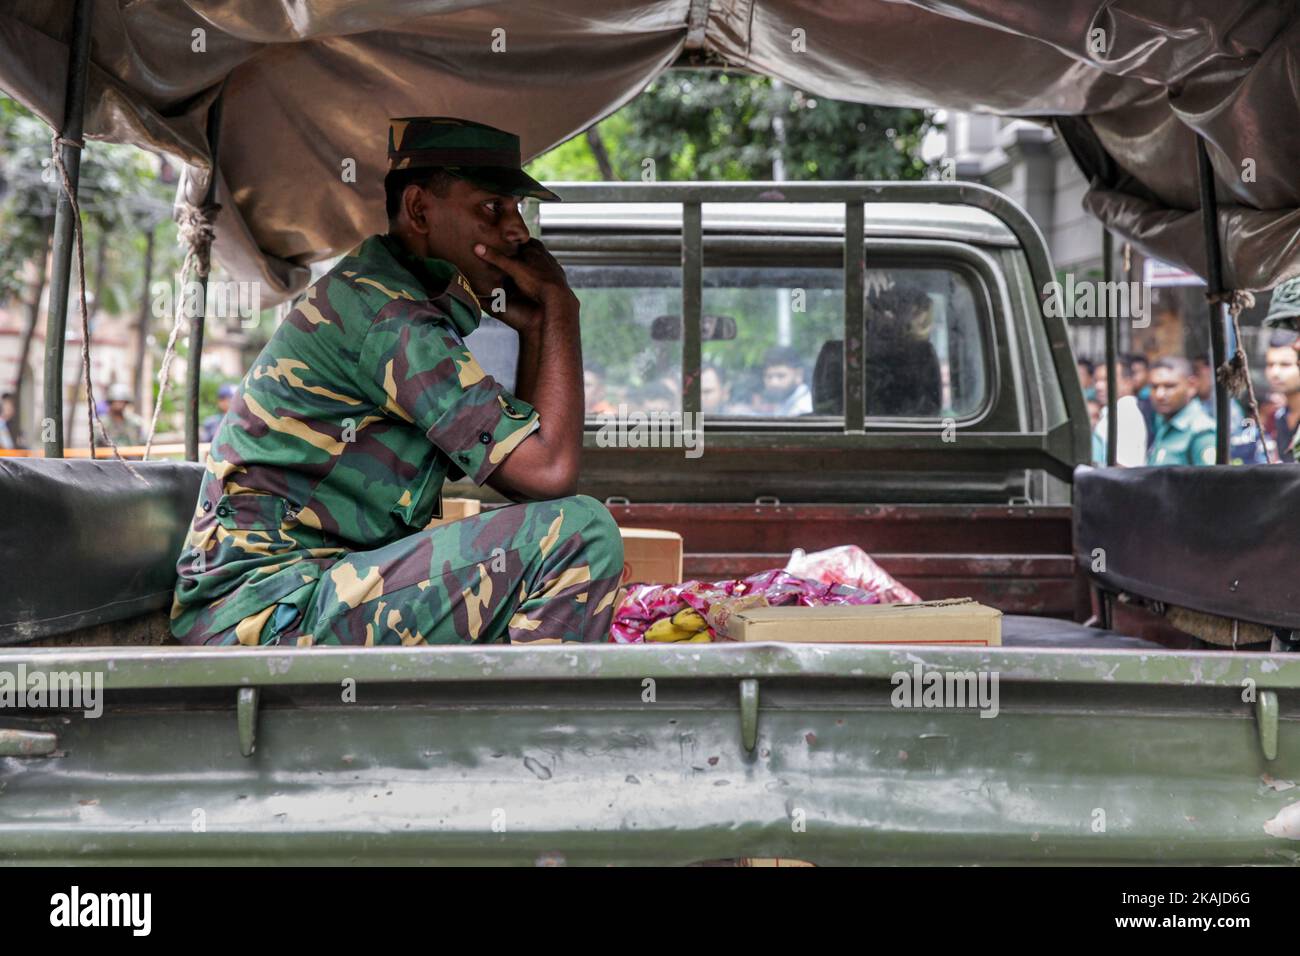 Des soldats bangladais et du personnel de sécurité sont assis sur des véhicules blindés dans une zone diplomatique de la capitale, Dhaka (Bangladesh), le 2 juillet 2016. Banque D'Images